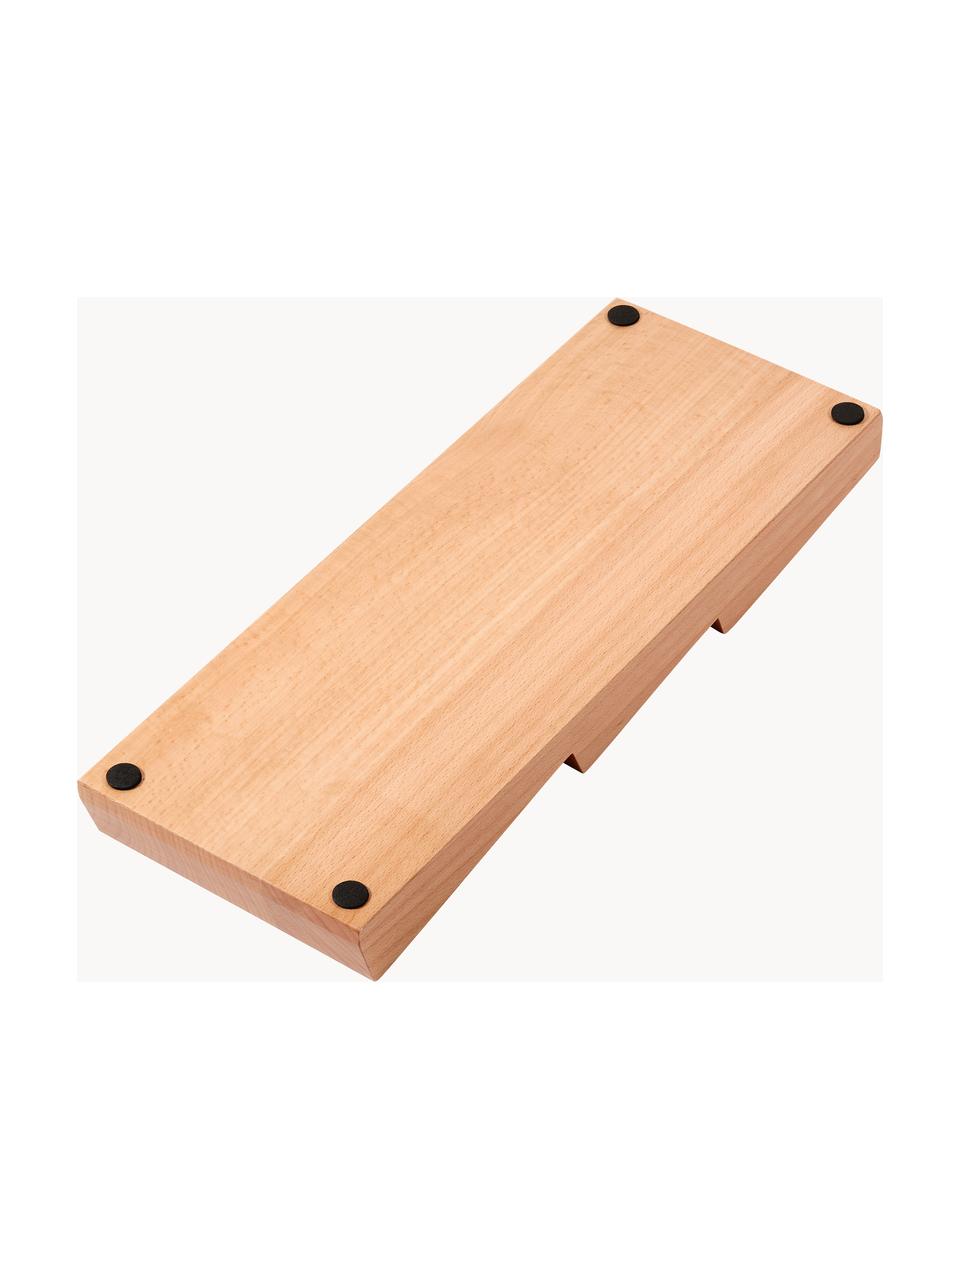 Vložka do zásuvky z bukového dreva Cook, Bukové drevo, Bukové drevo, Š 41 x V 5 cm